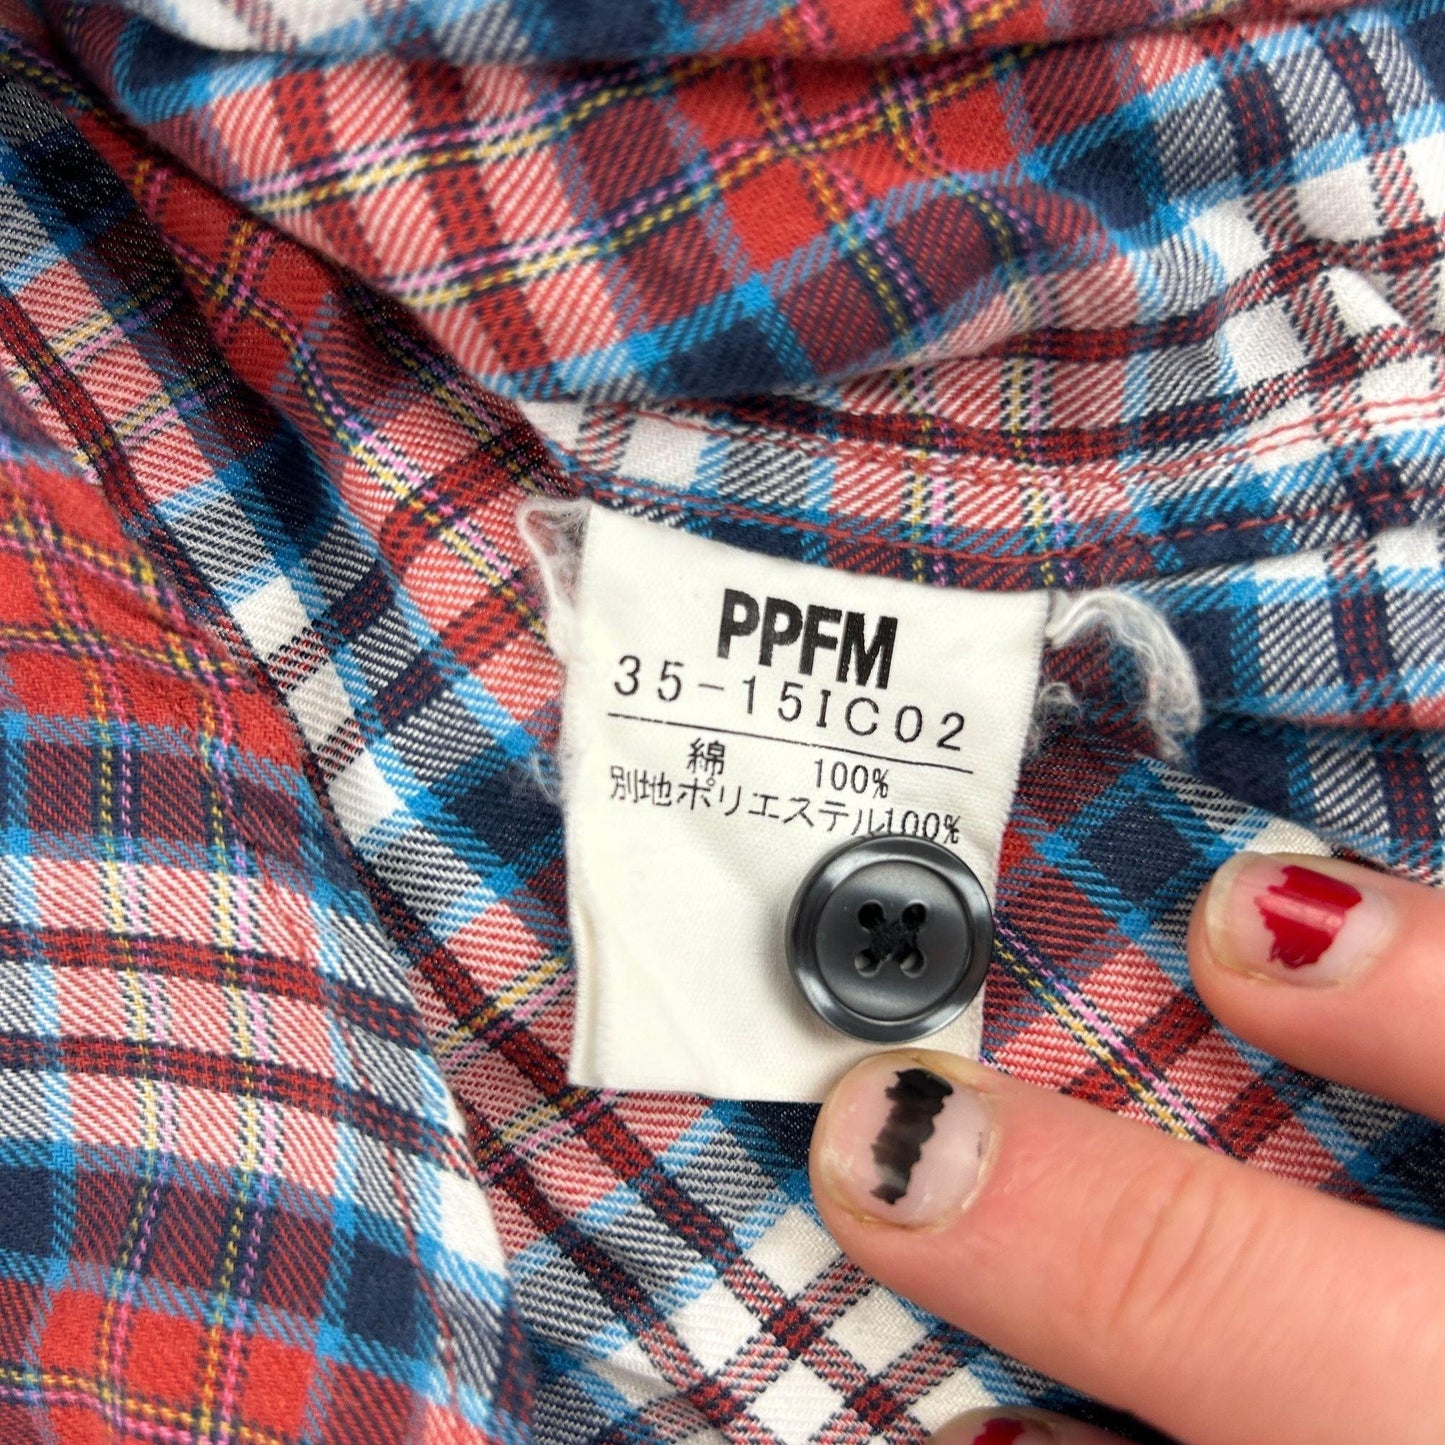 Vintage PPFM Plaid Zip-Up Shirt Size M - Known Source